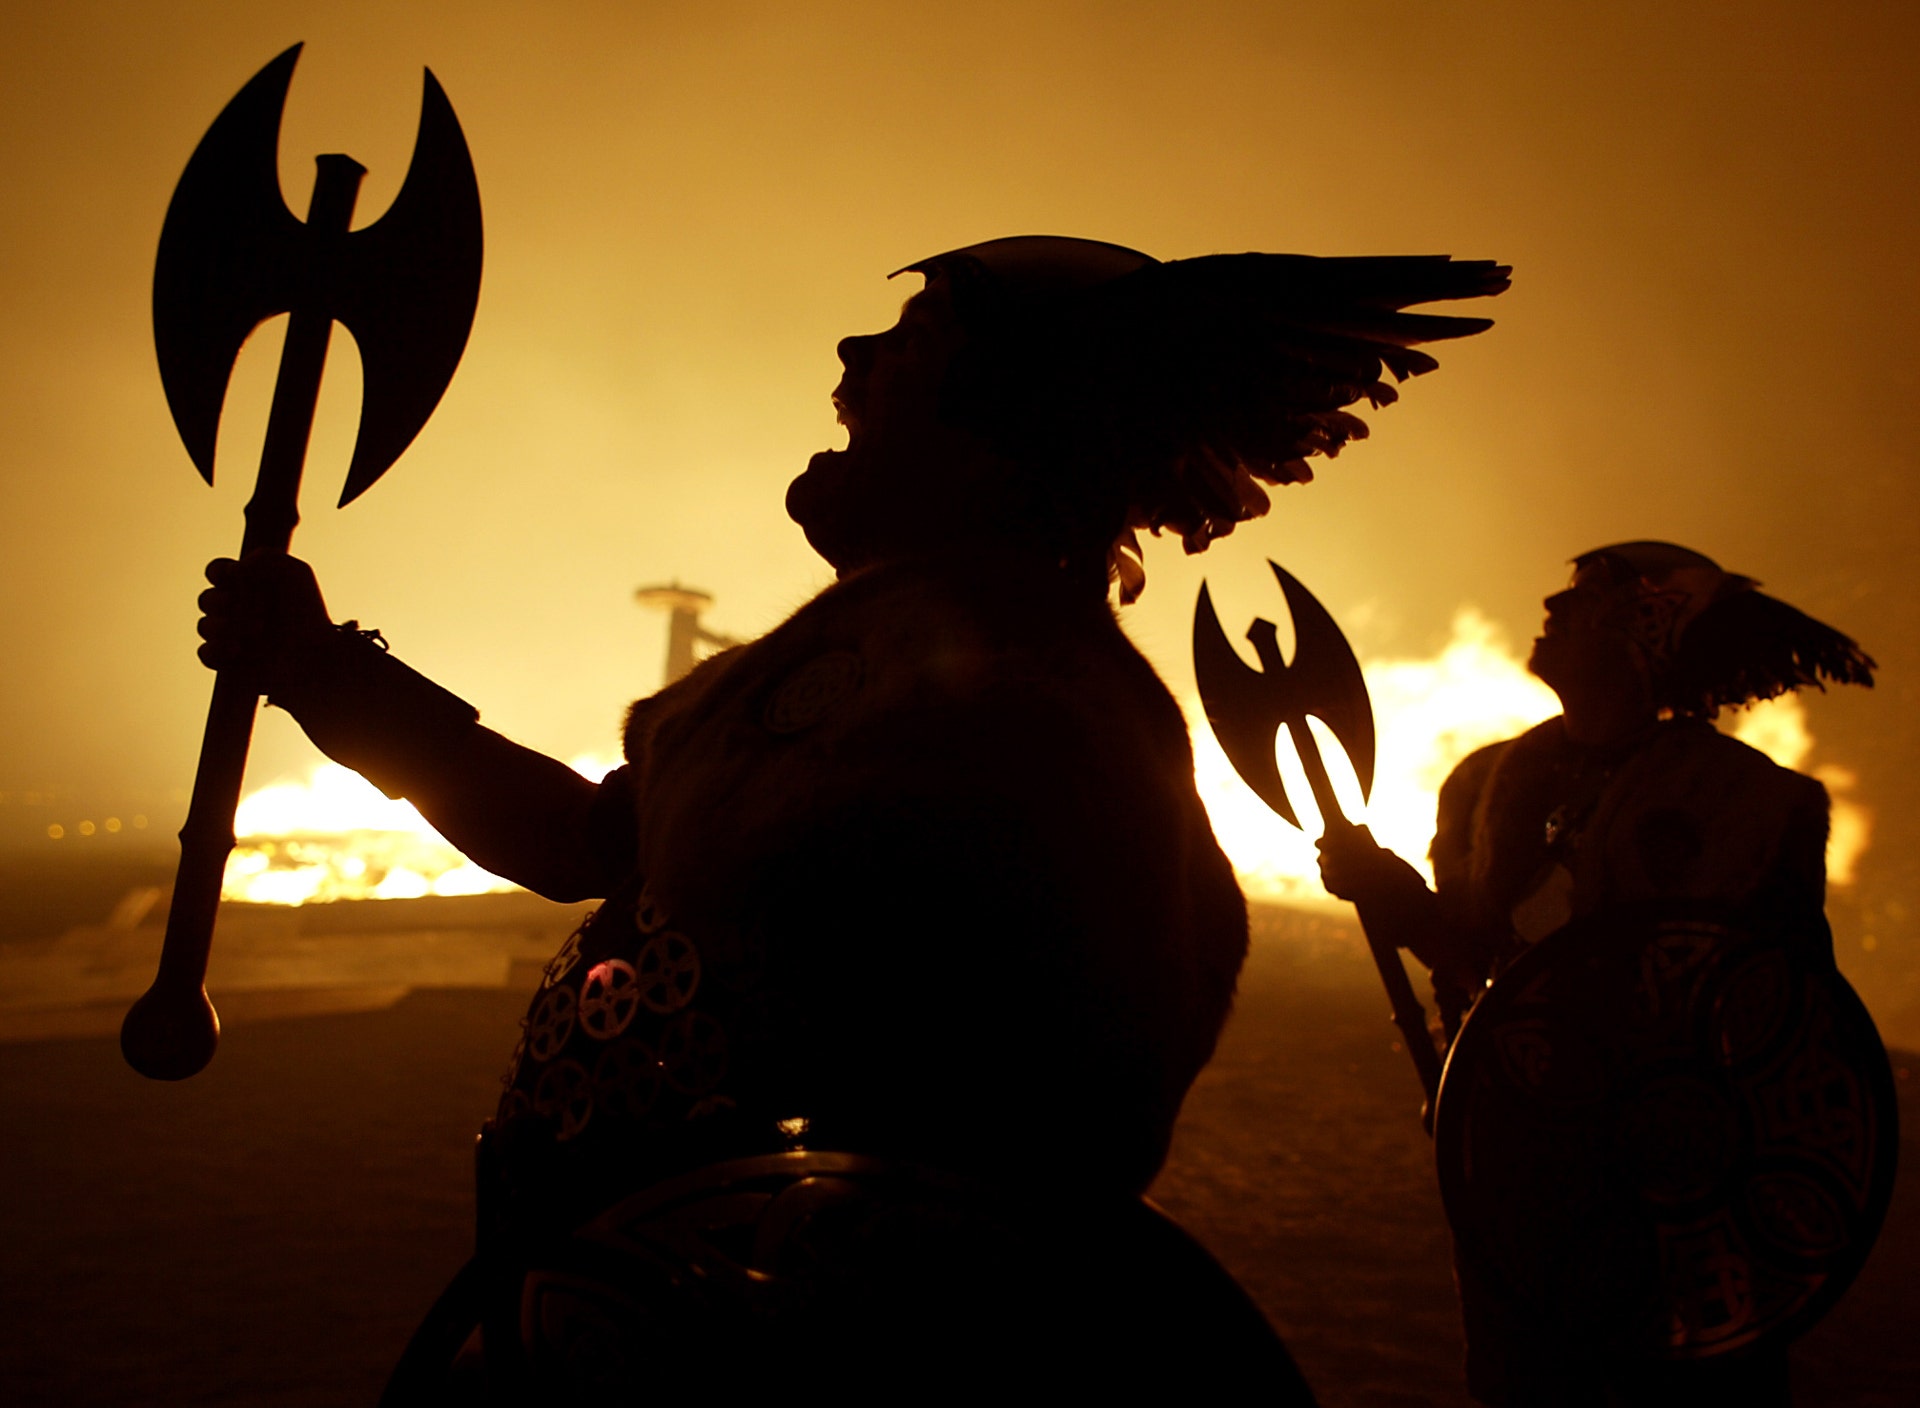 Viking virtues can help defeat woke enemies of America